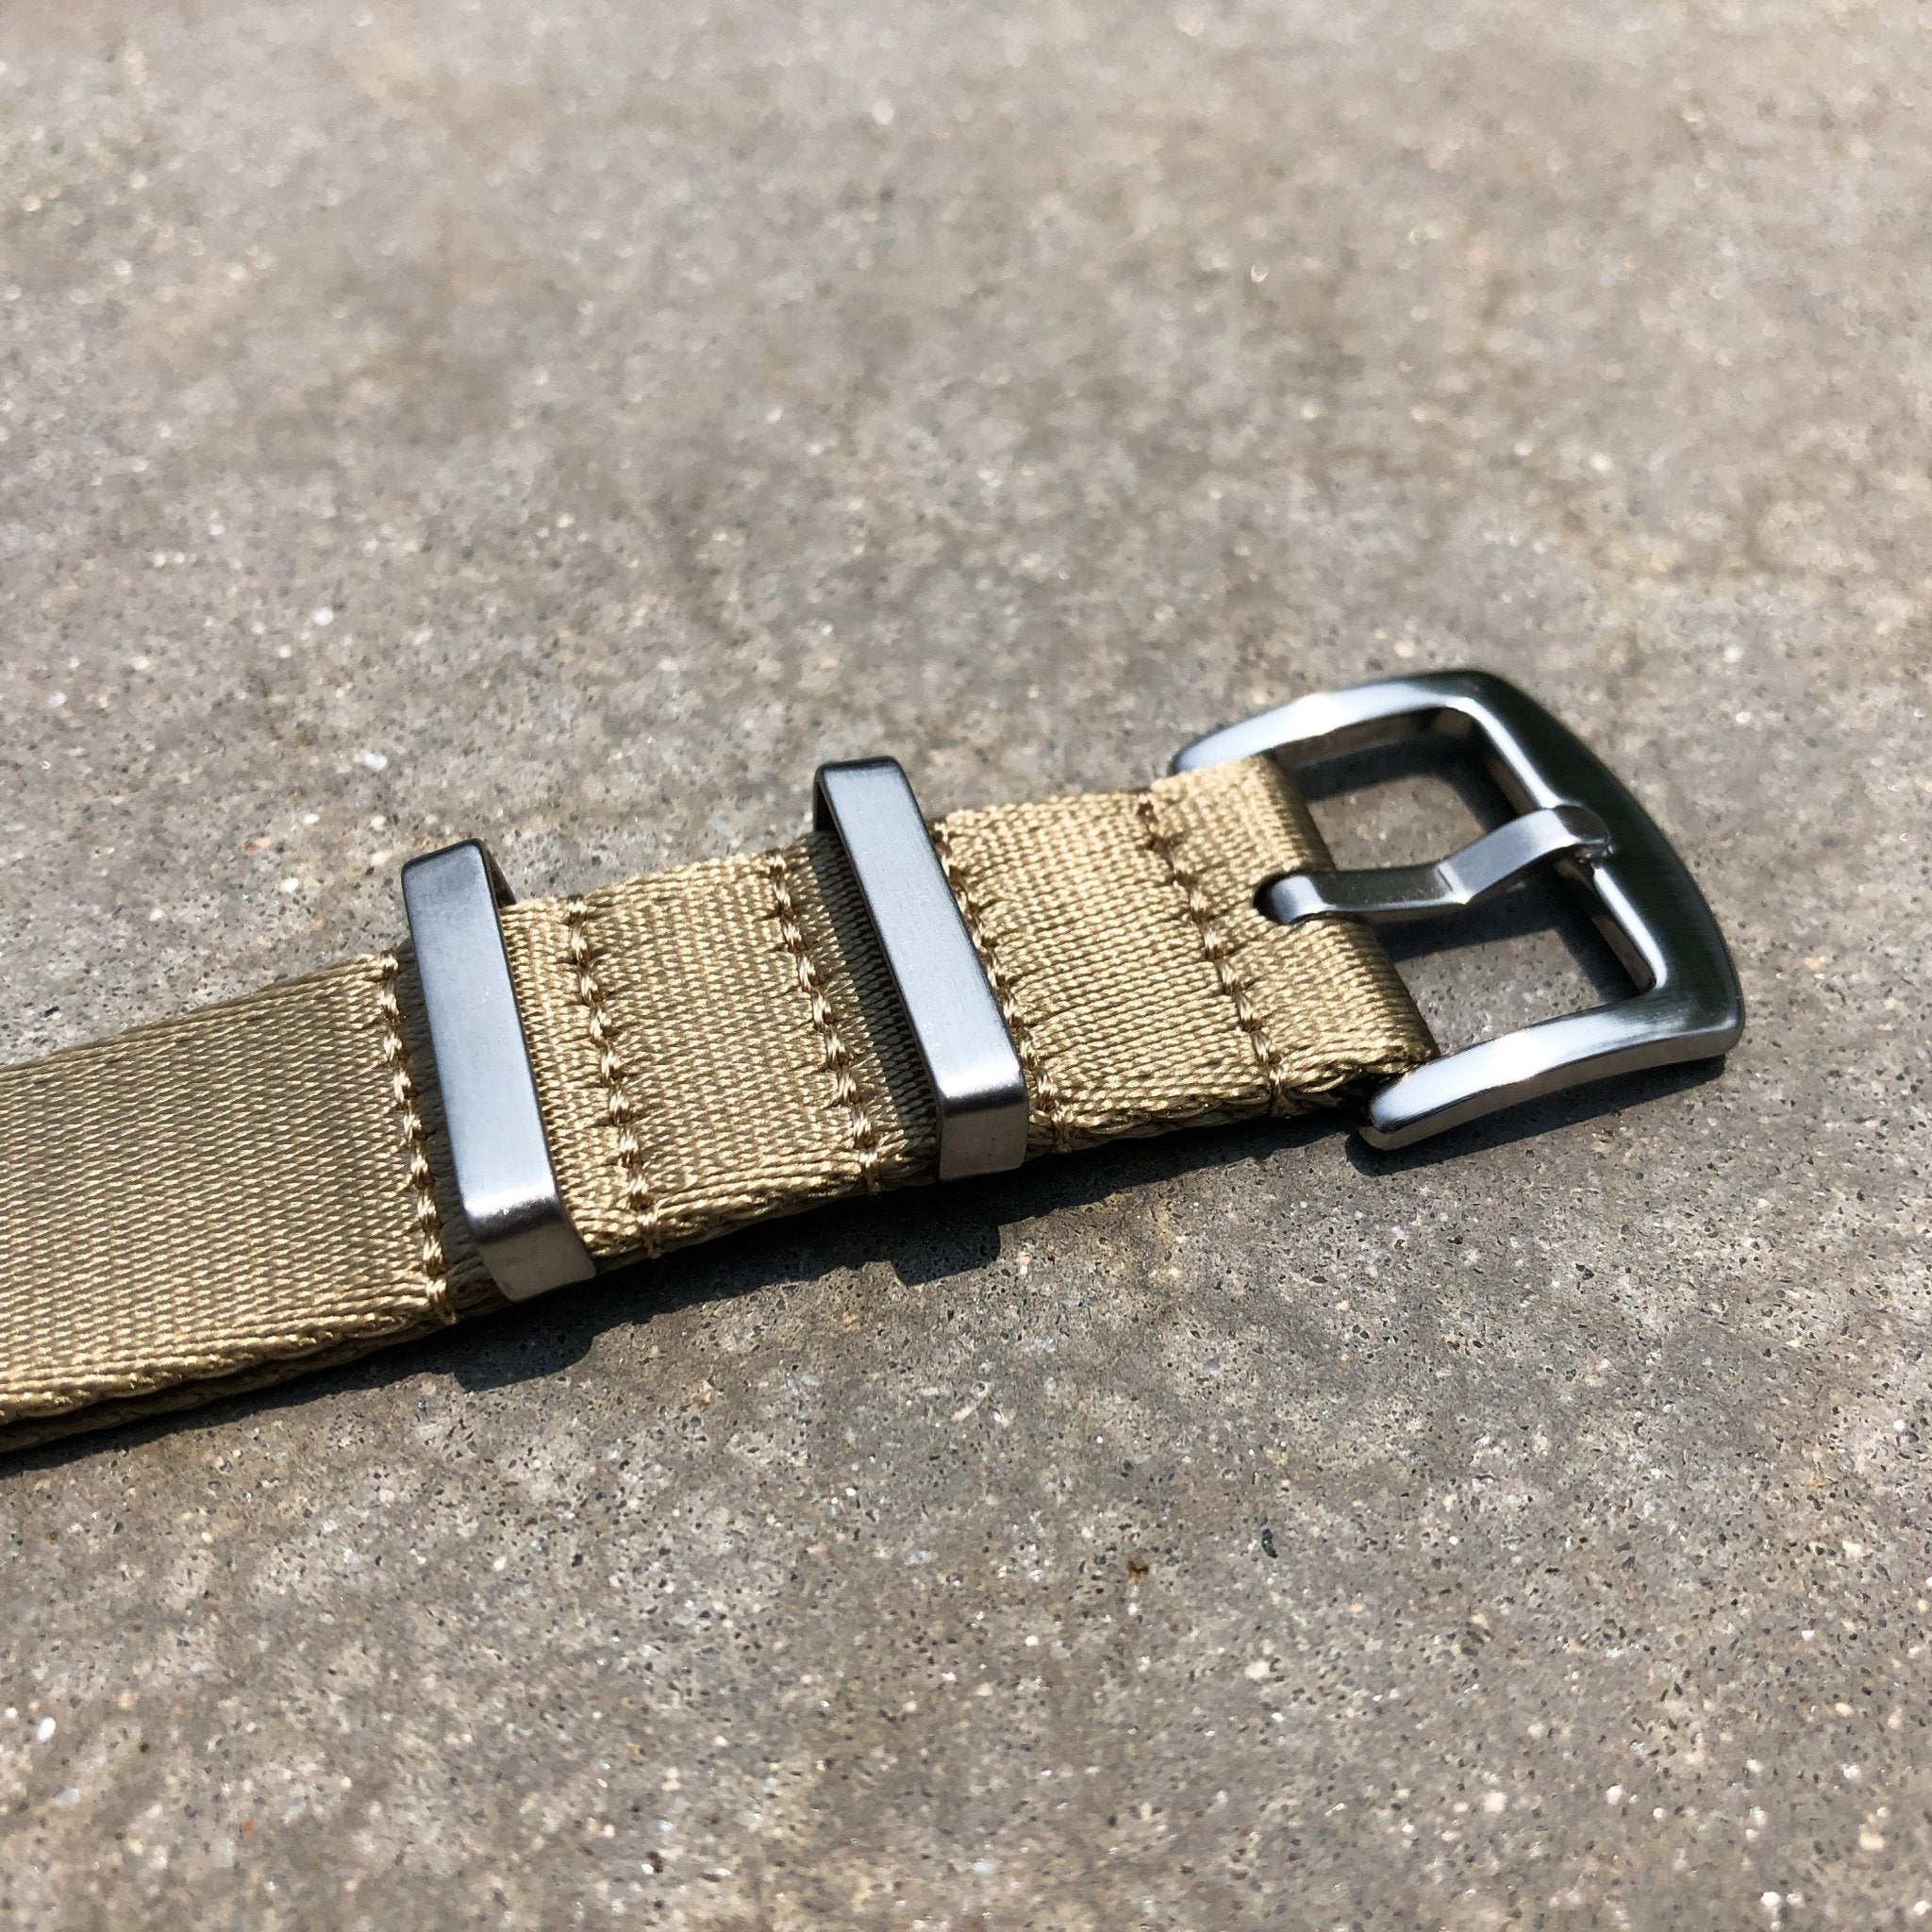 Sand Khaki | Premium Nato Watch Strap - Samurai Vintage Co.